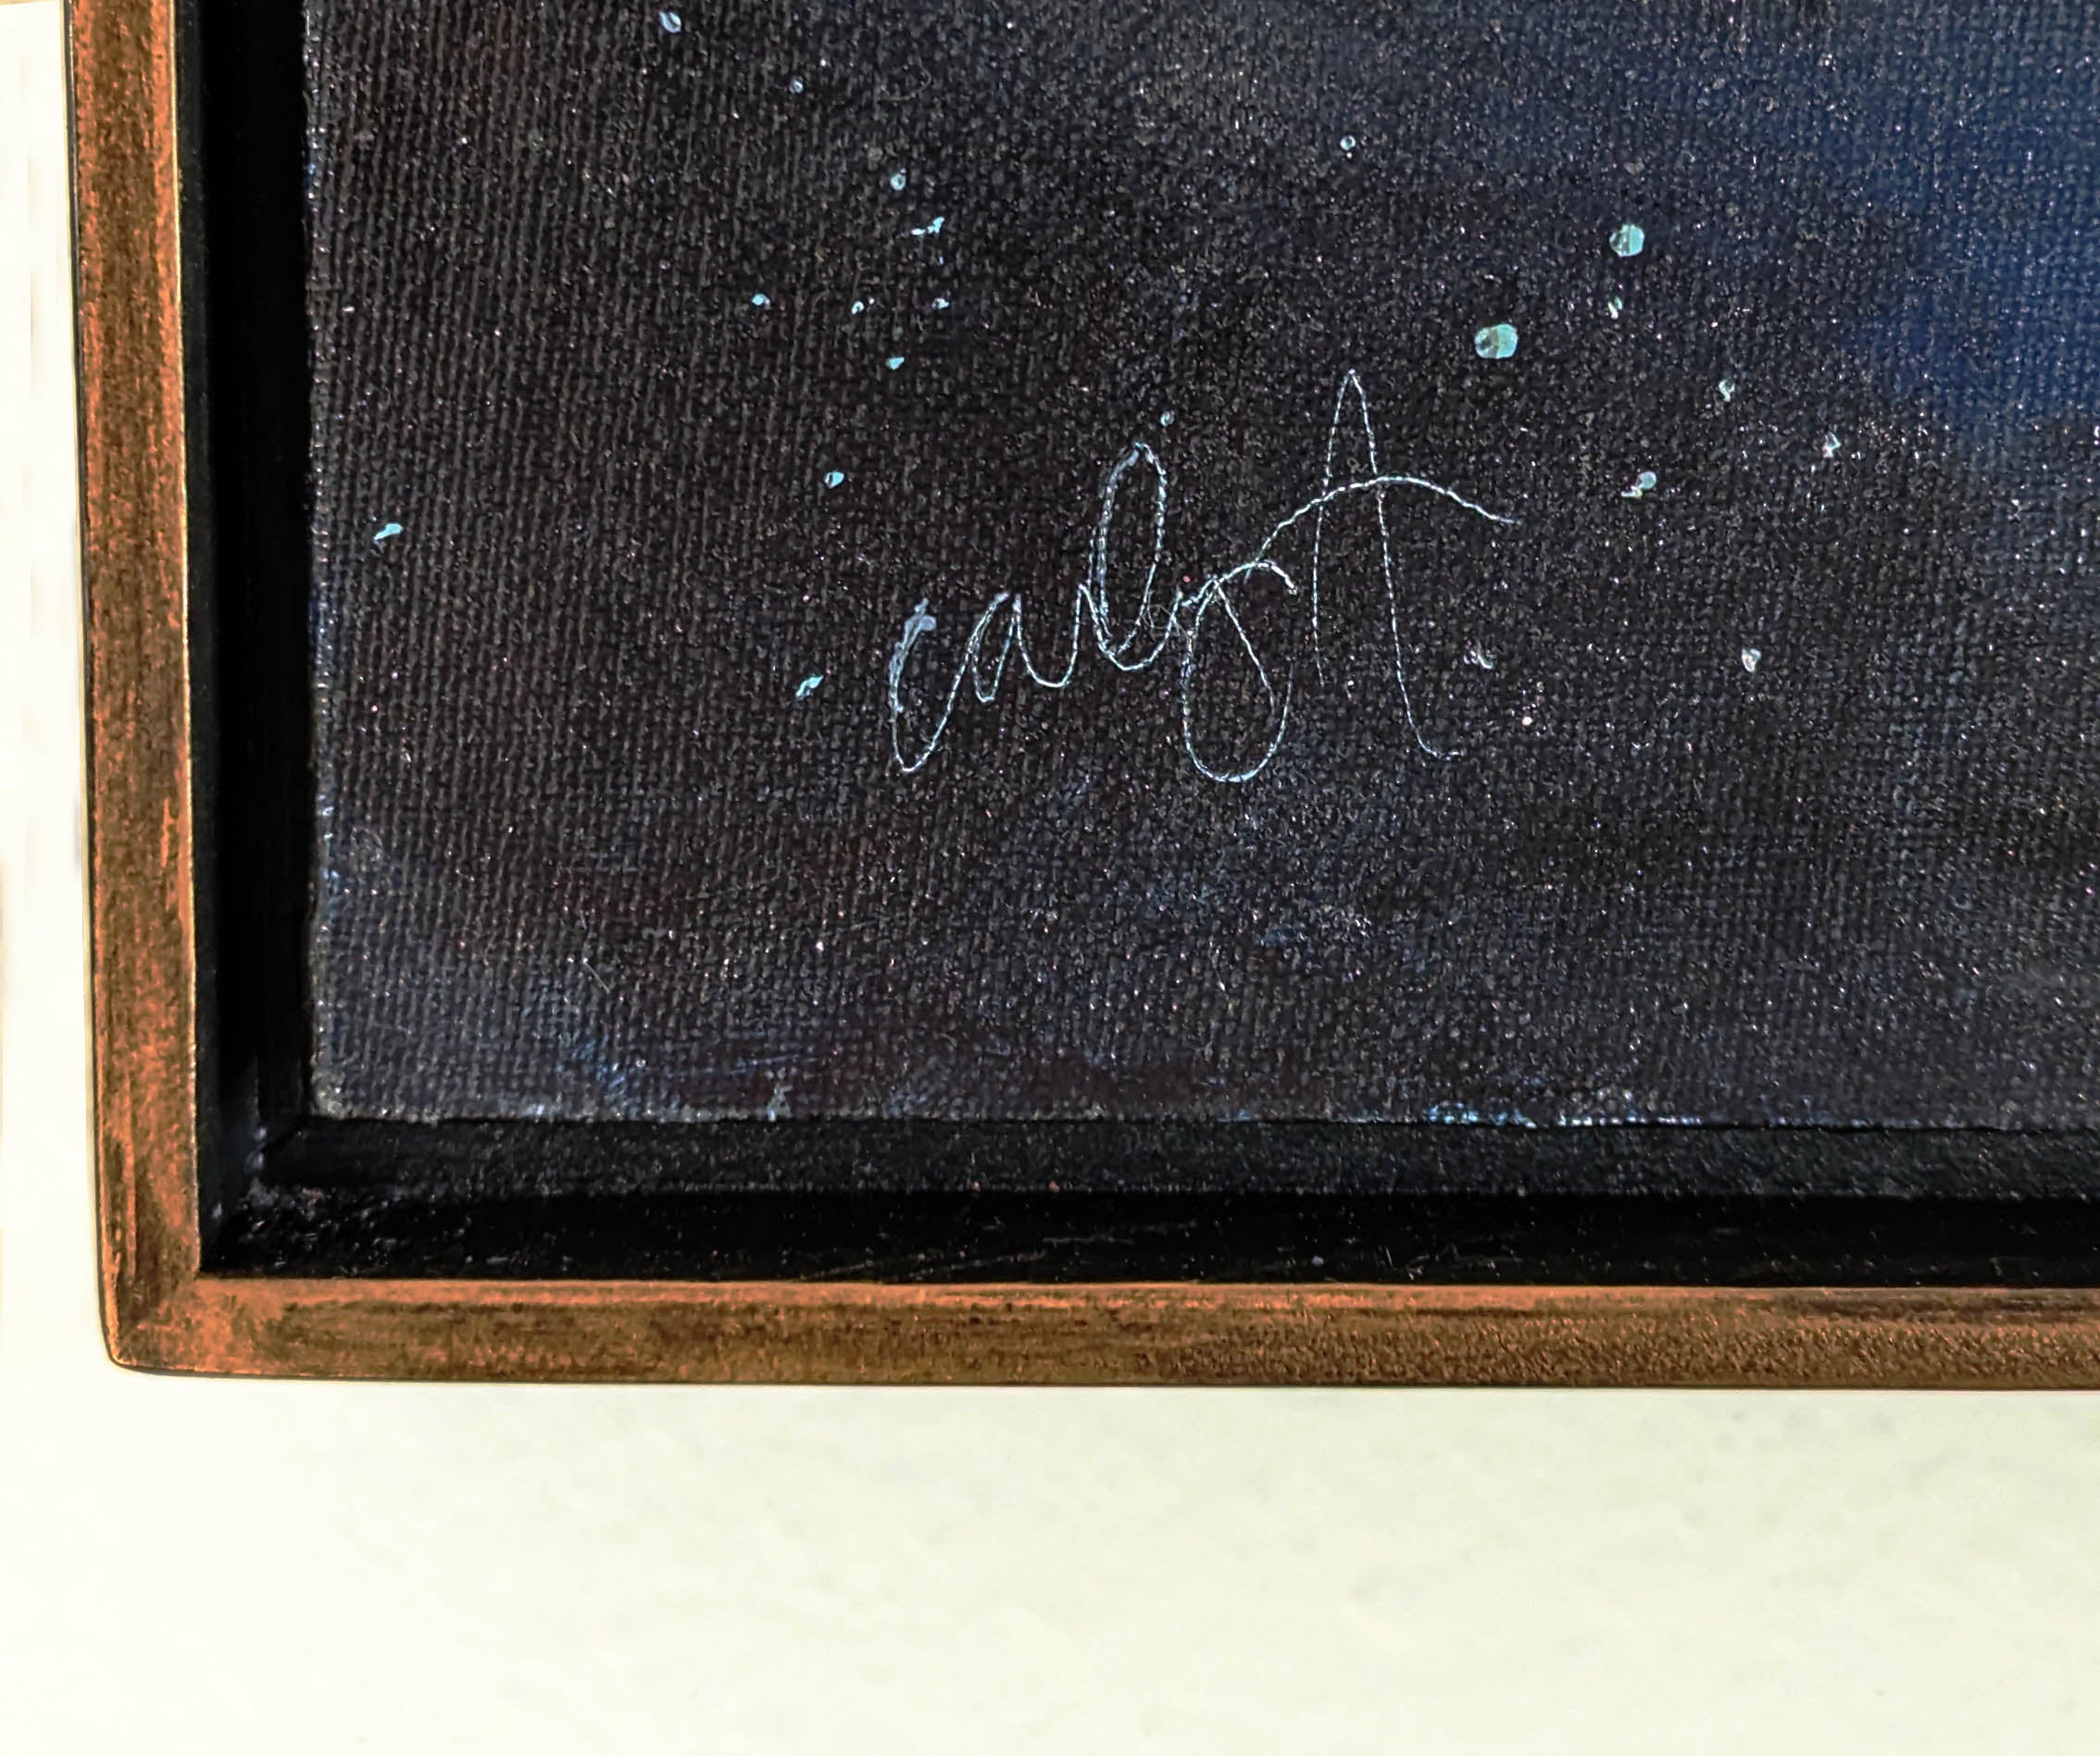 Carina Nebula | 18 x 24 Original